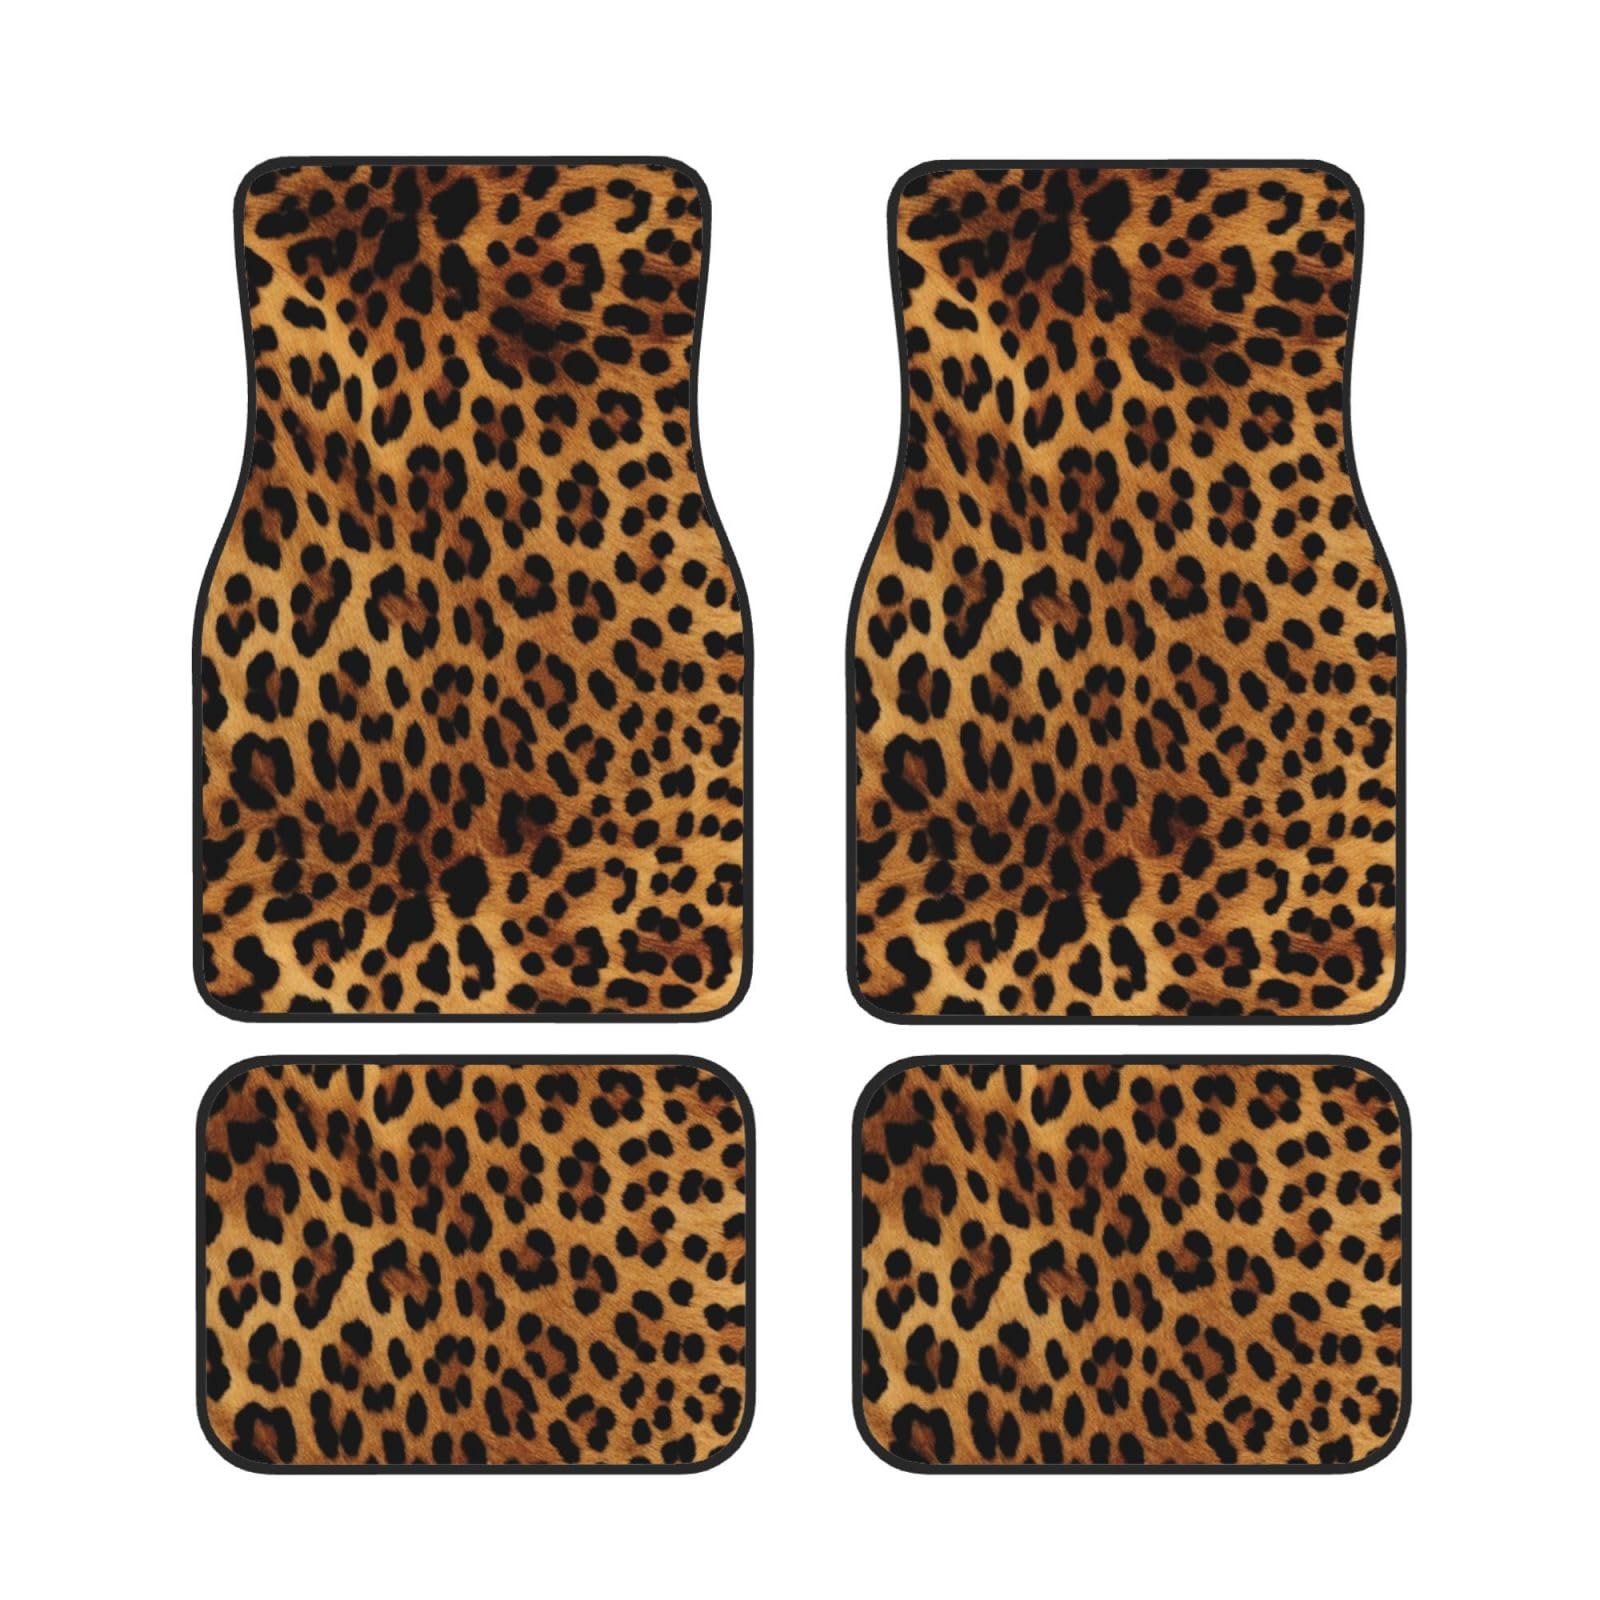 Auto Fußmatten Leopard Skin Print Wasserdicht Auto Pads Universal Auto Vorne Hinten Fußmatten Anti-Rutsch Automatten Set von 4 Stück für SUV Vans LKW Auto Zubehör Dekor von AdaNti